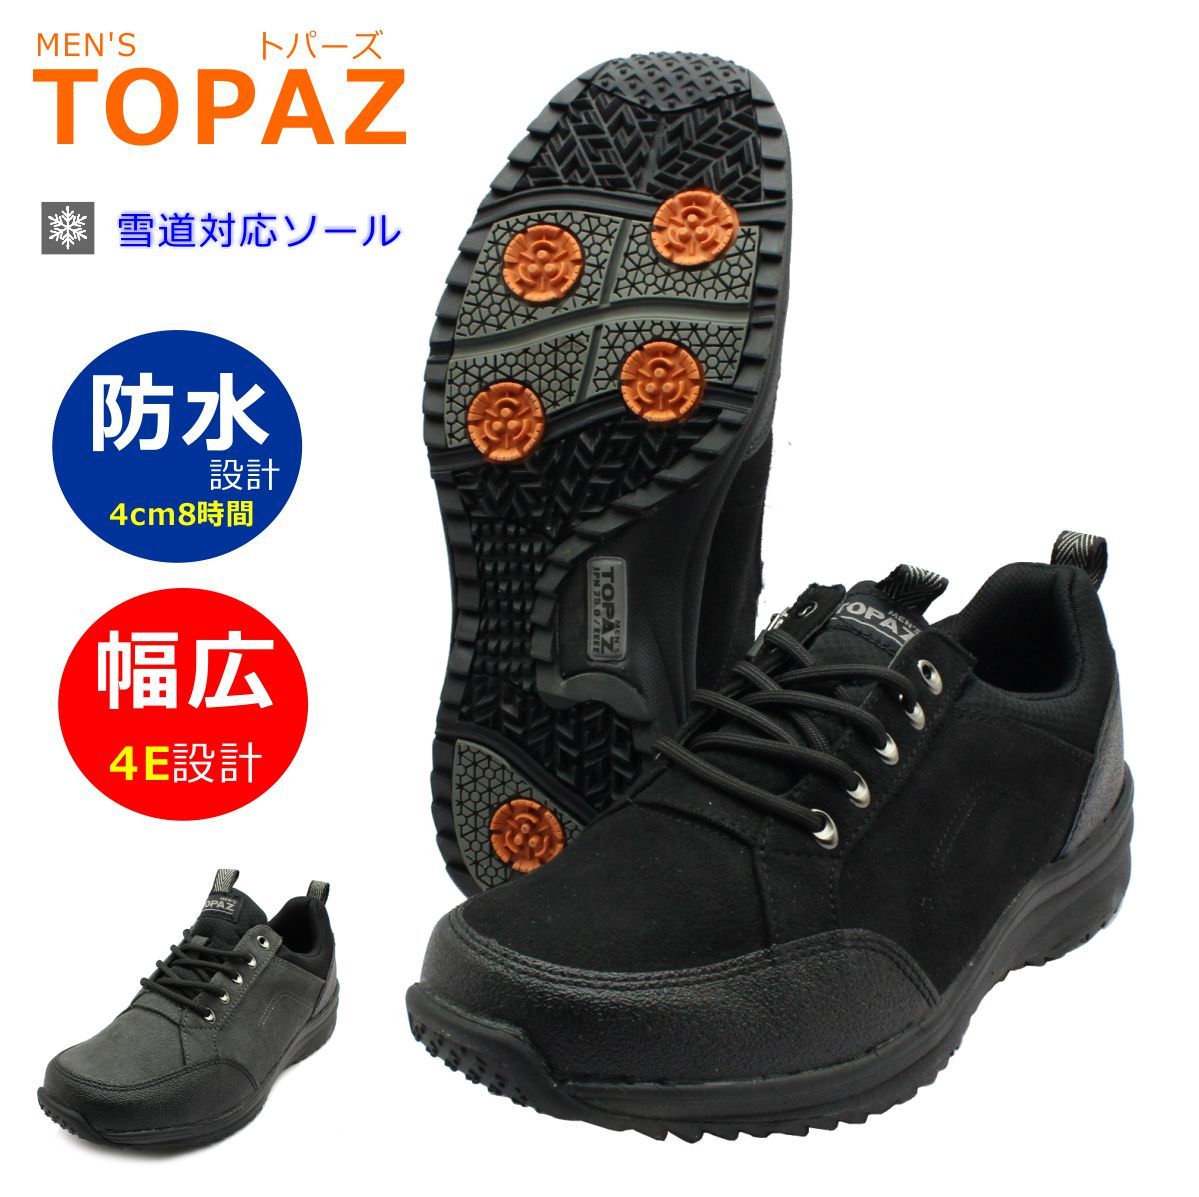 トパーズ TOPAZA メンズ スノーシューズ カジュアル MTZ-0137 137 防水 防滑 4E幅広 紳士靴 世界長 :top0137:ミッキー靴店  通販 